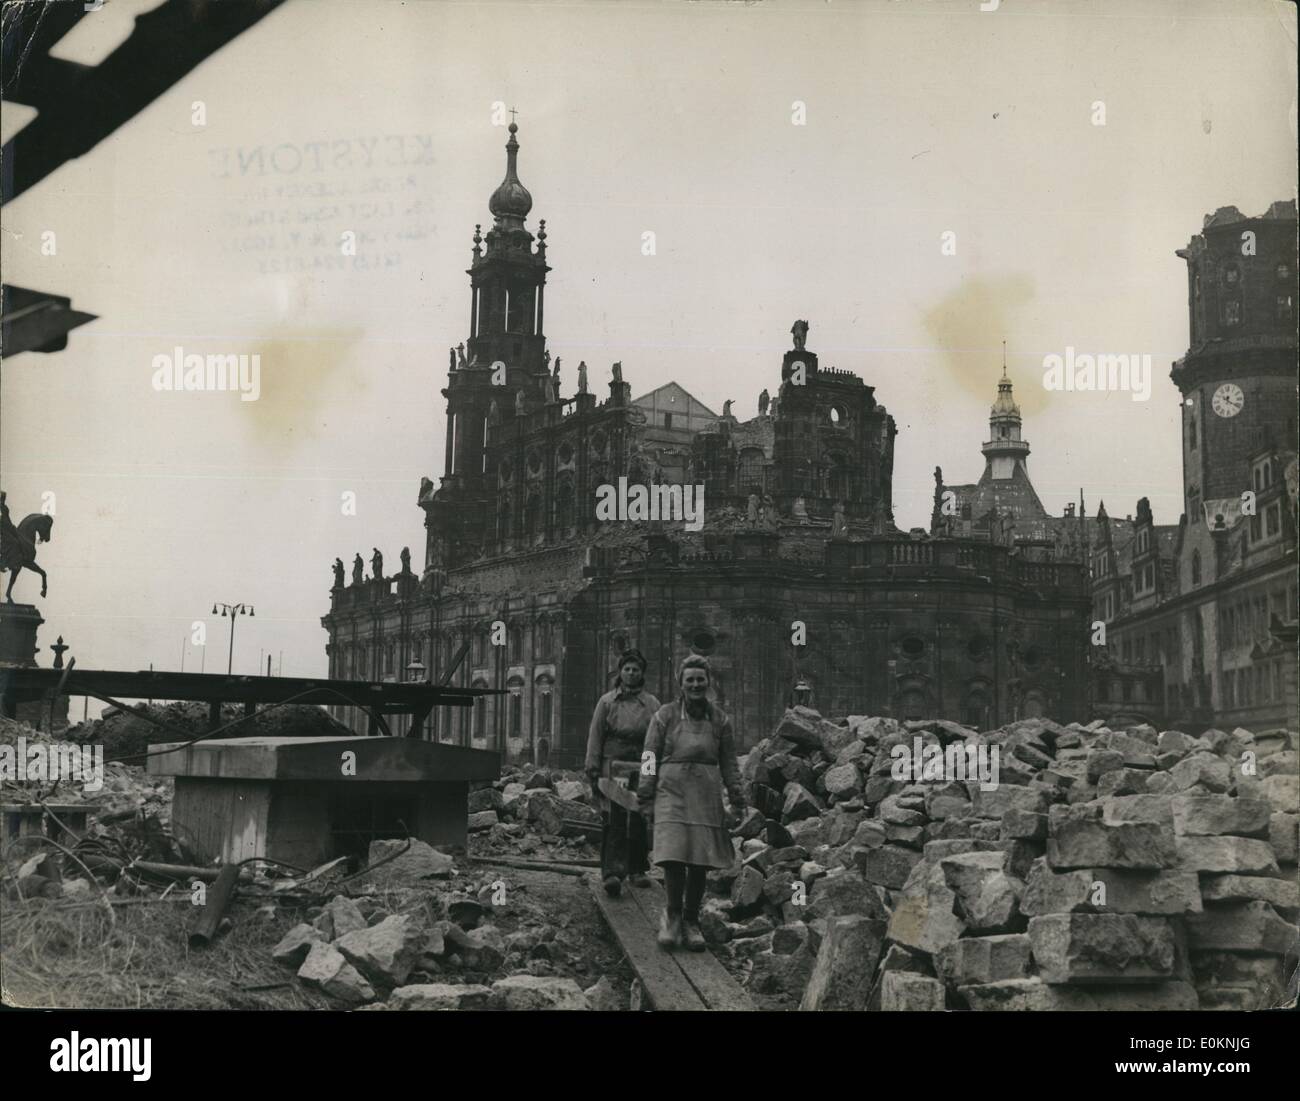 Jan 1, 1940 - Les ruines de Hof Kirche : Le shell de la cathédrale catholique du Hof Kirche de Dresde, montrant les travailleuses movin Banque D'Images